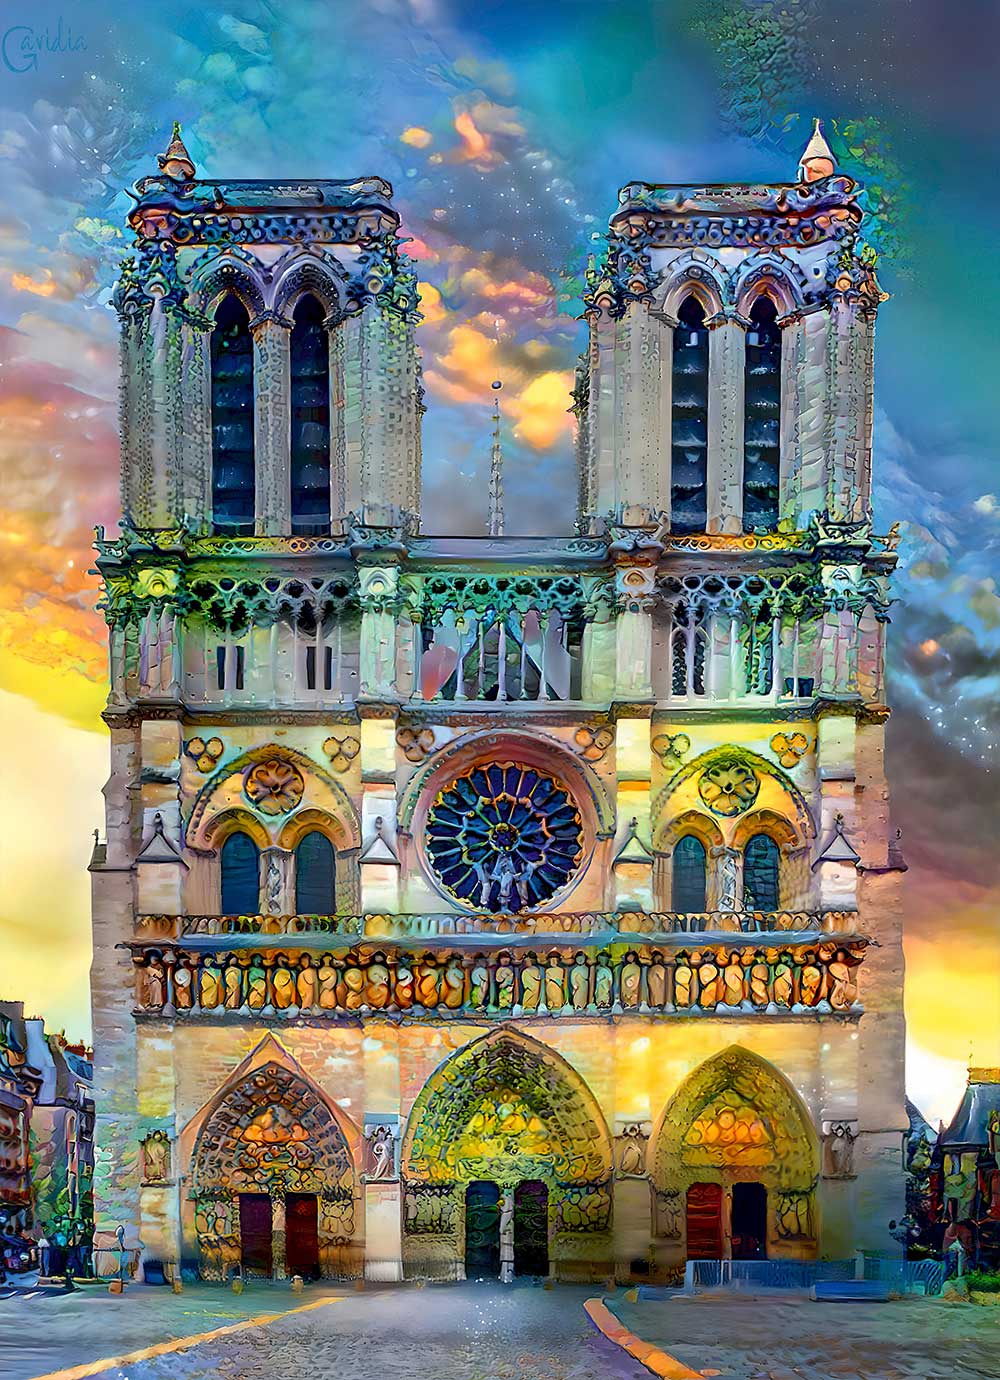 Puzzle Bluebird Catedral de Notre Dame, Paris de 1.000 peças